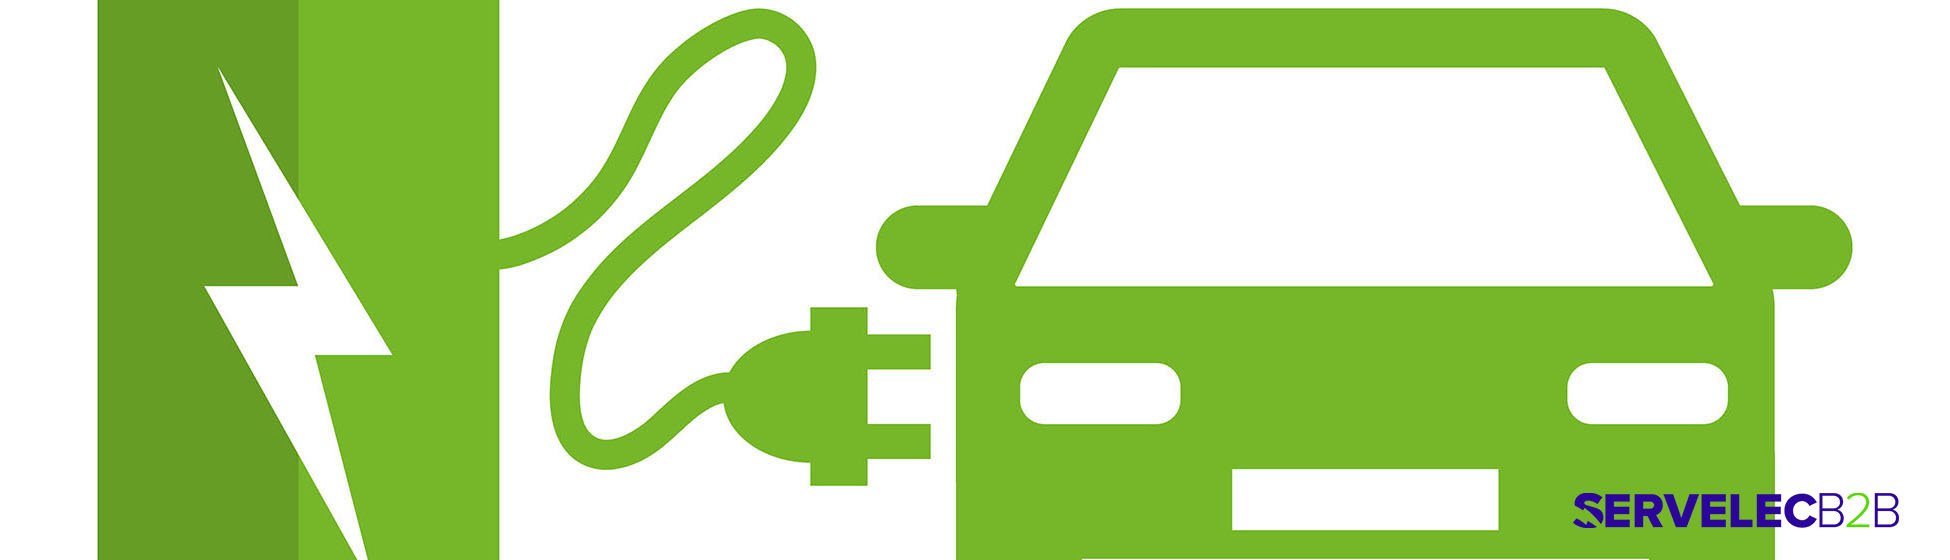 Réglementation parking borne de recharge véhicule électrique